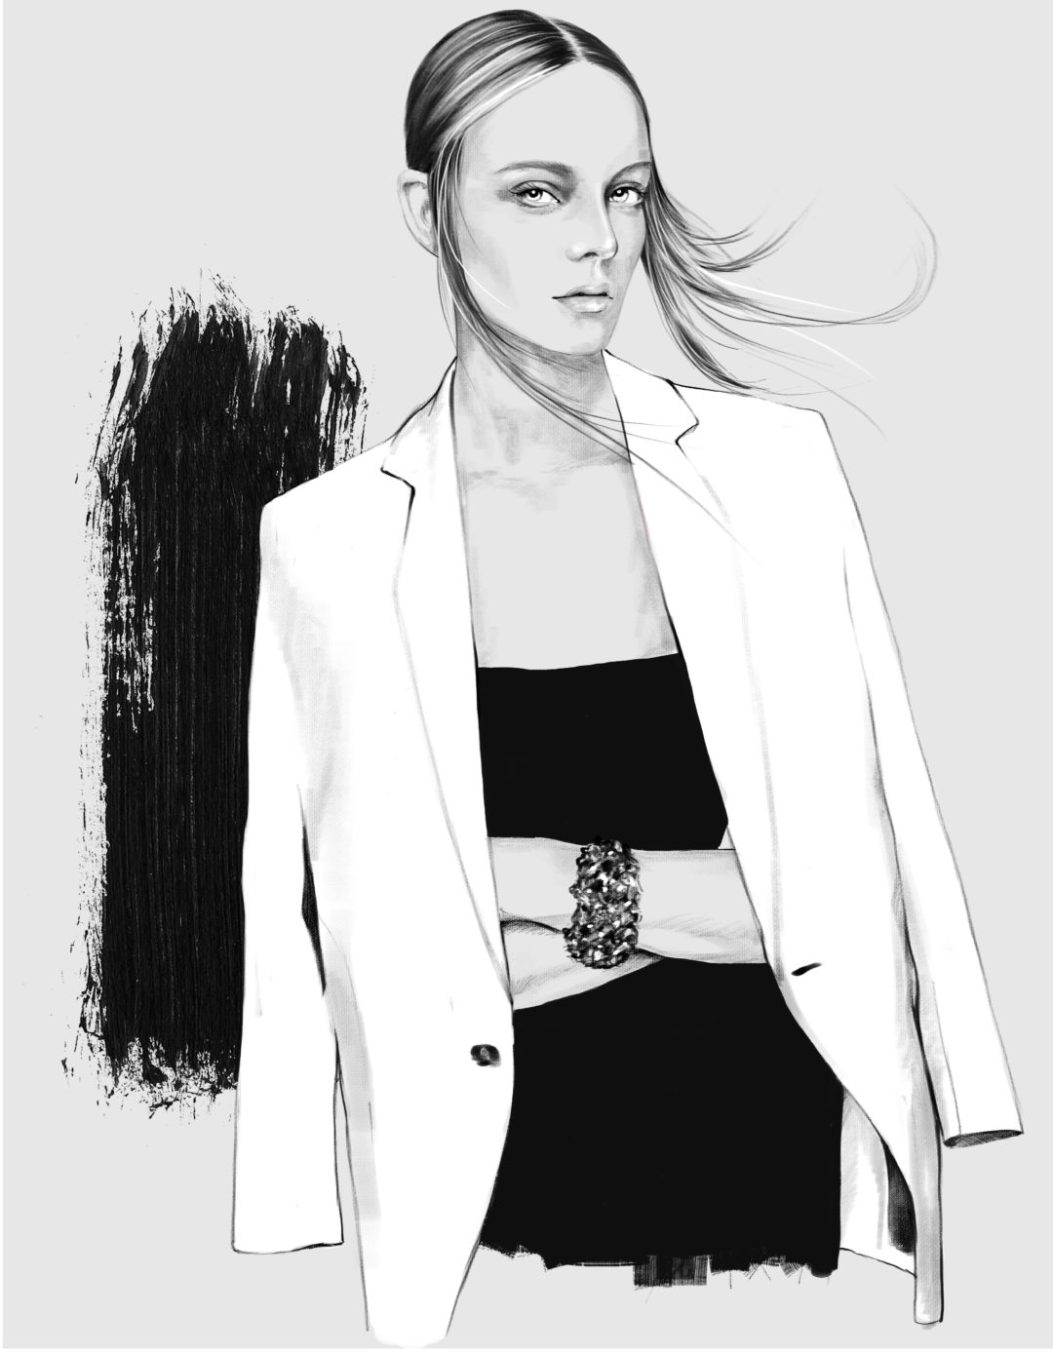 2D Black and White Stylish Fashion Model Illustration